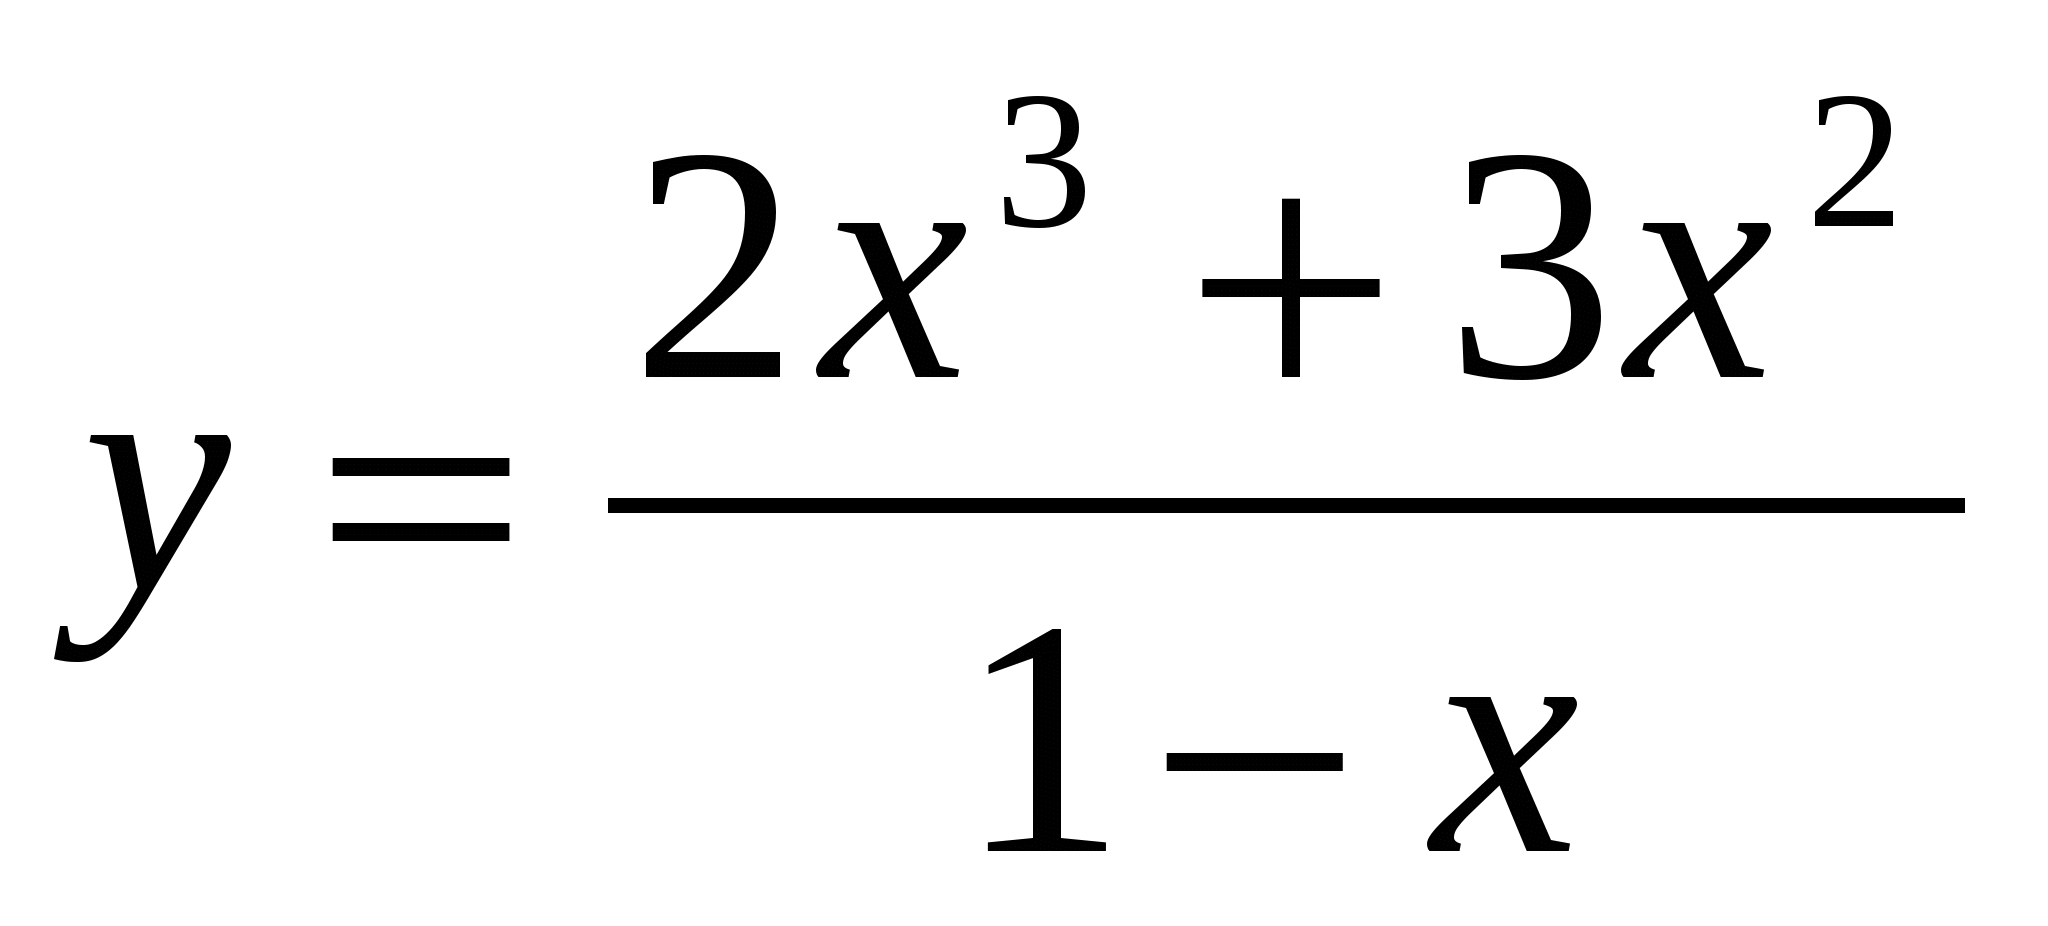 Конспект урока по алгебре и началам математического анализа по теме «Техника дифференцирования» (10 класс)